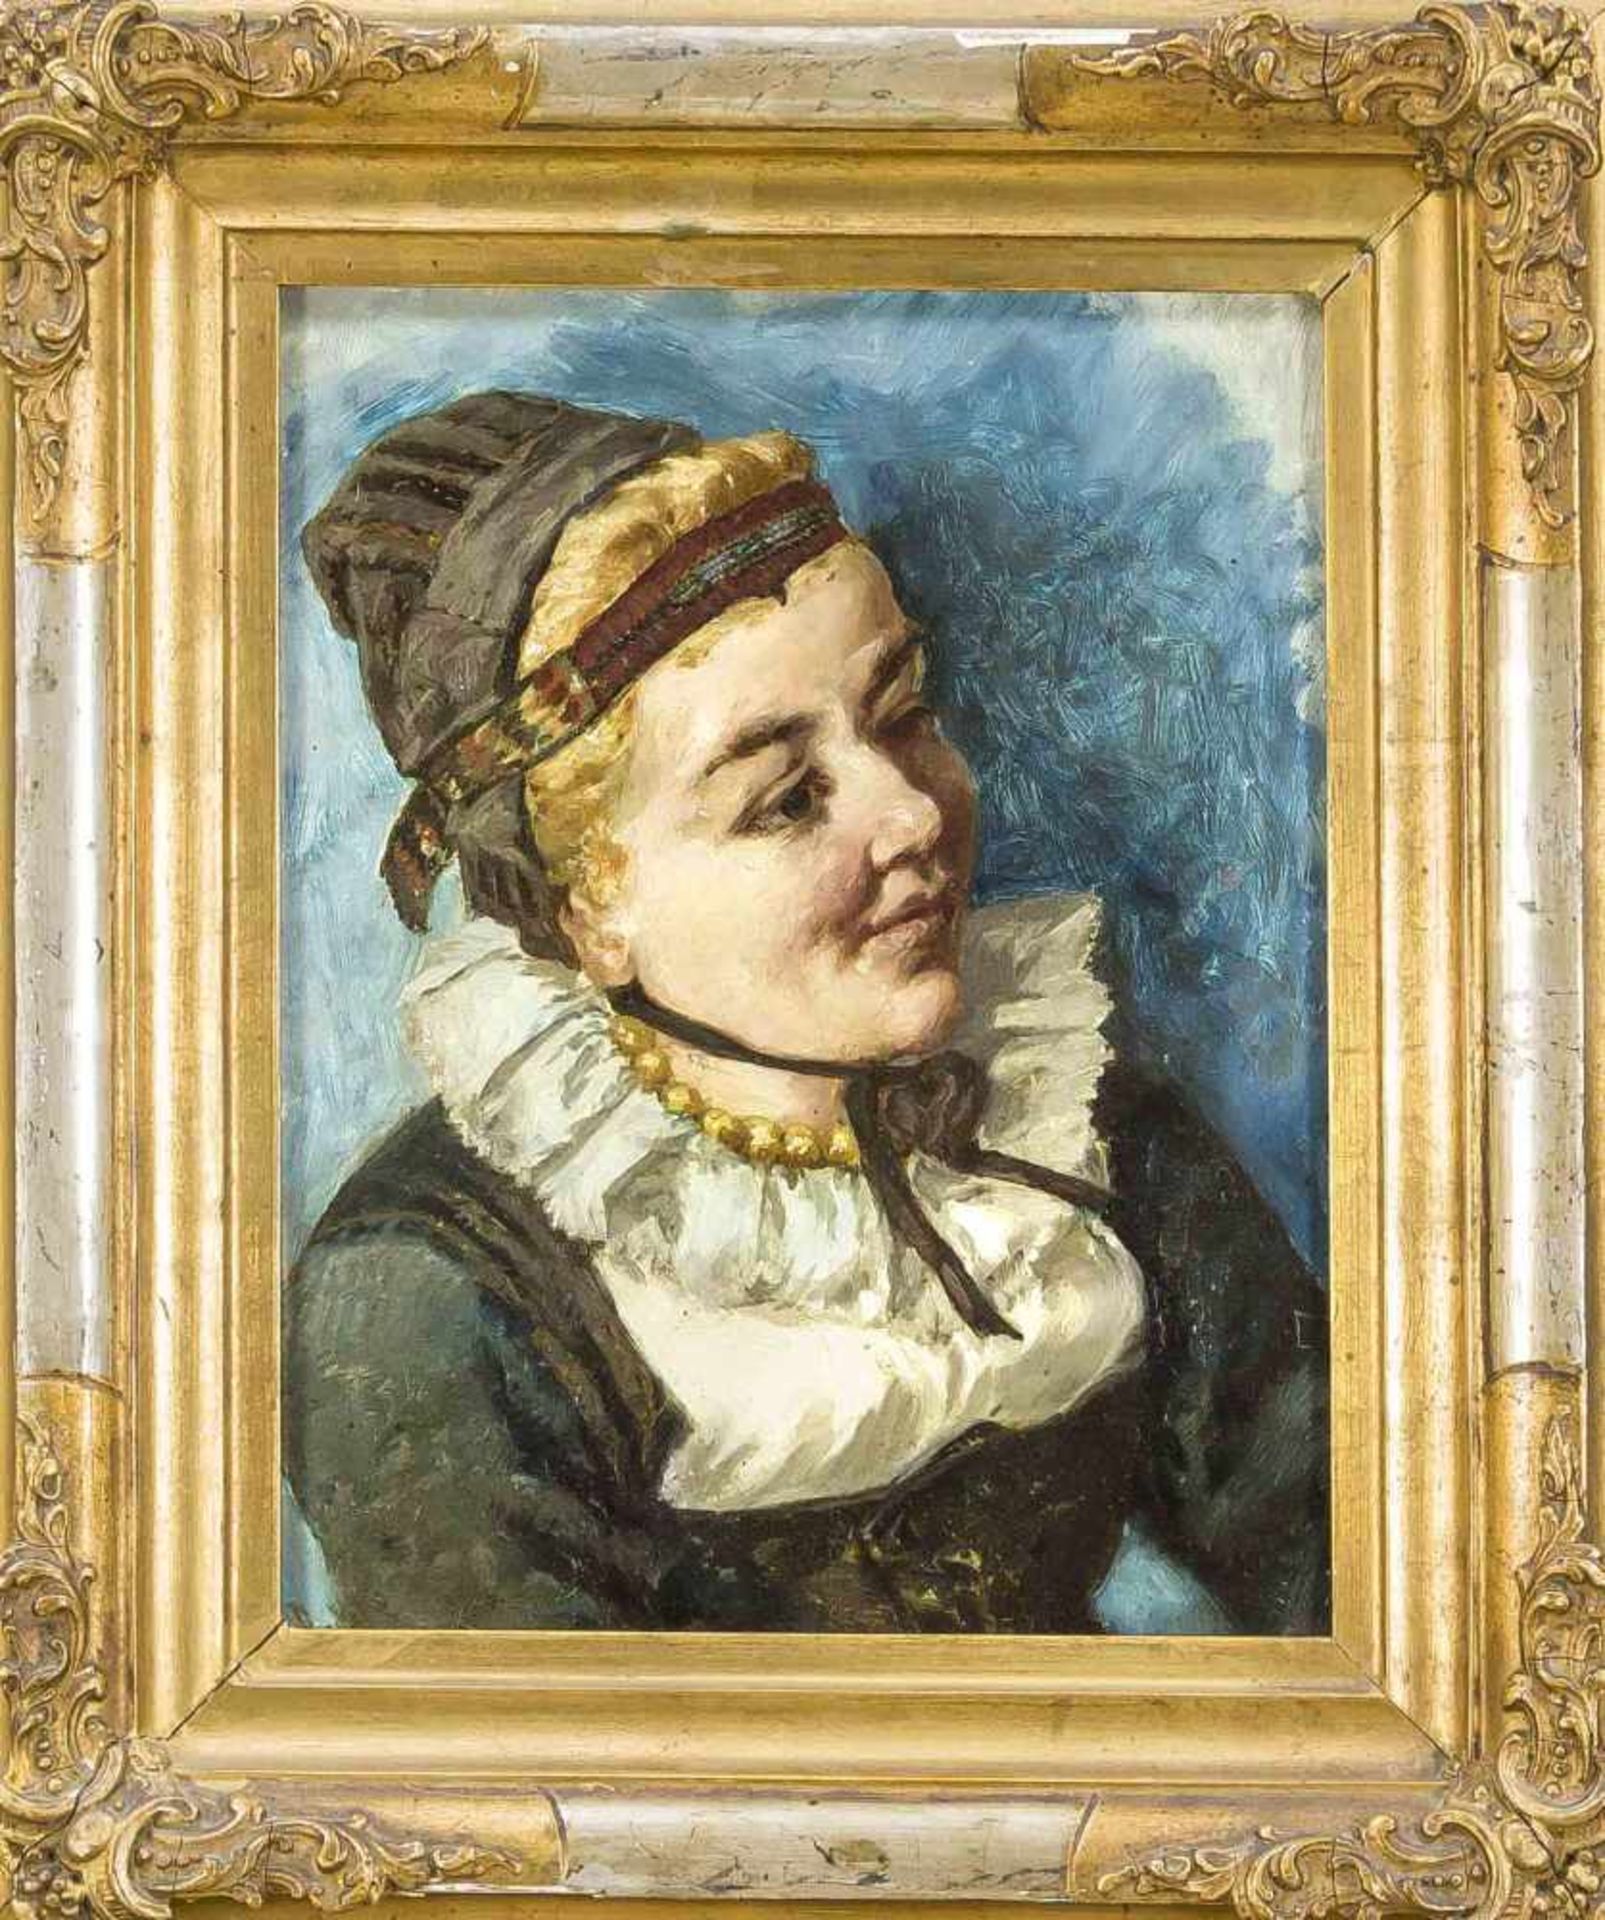 Friedrich Pondel (1830-?), süddt. Genremaler, Portrait einer jungen Frau in Tracht mitperlbesticktem